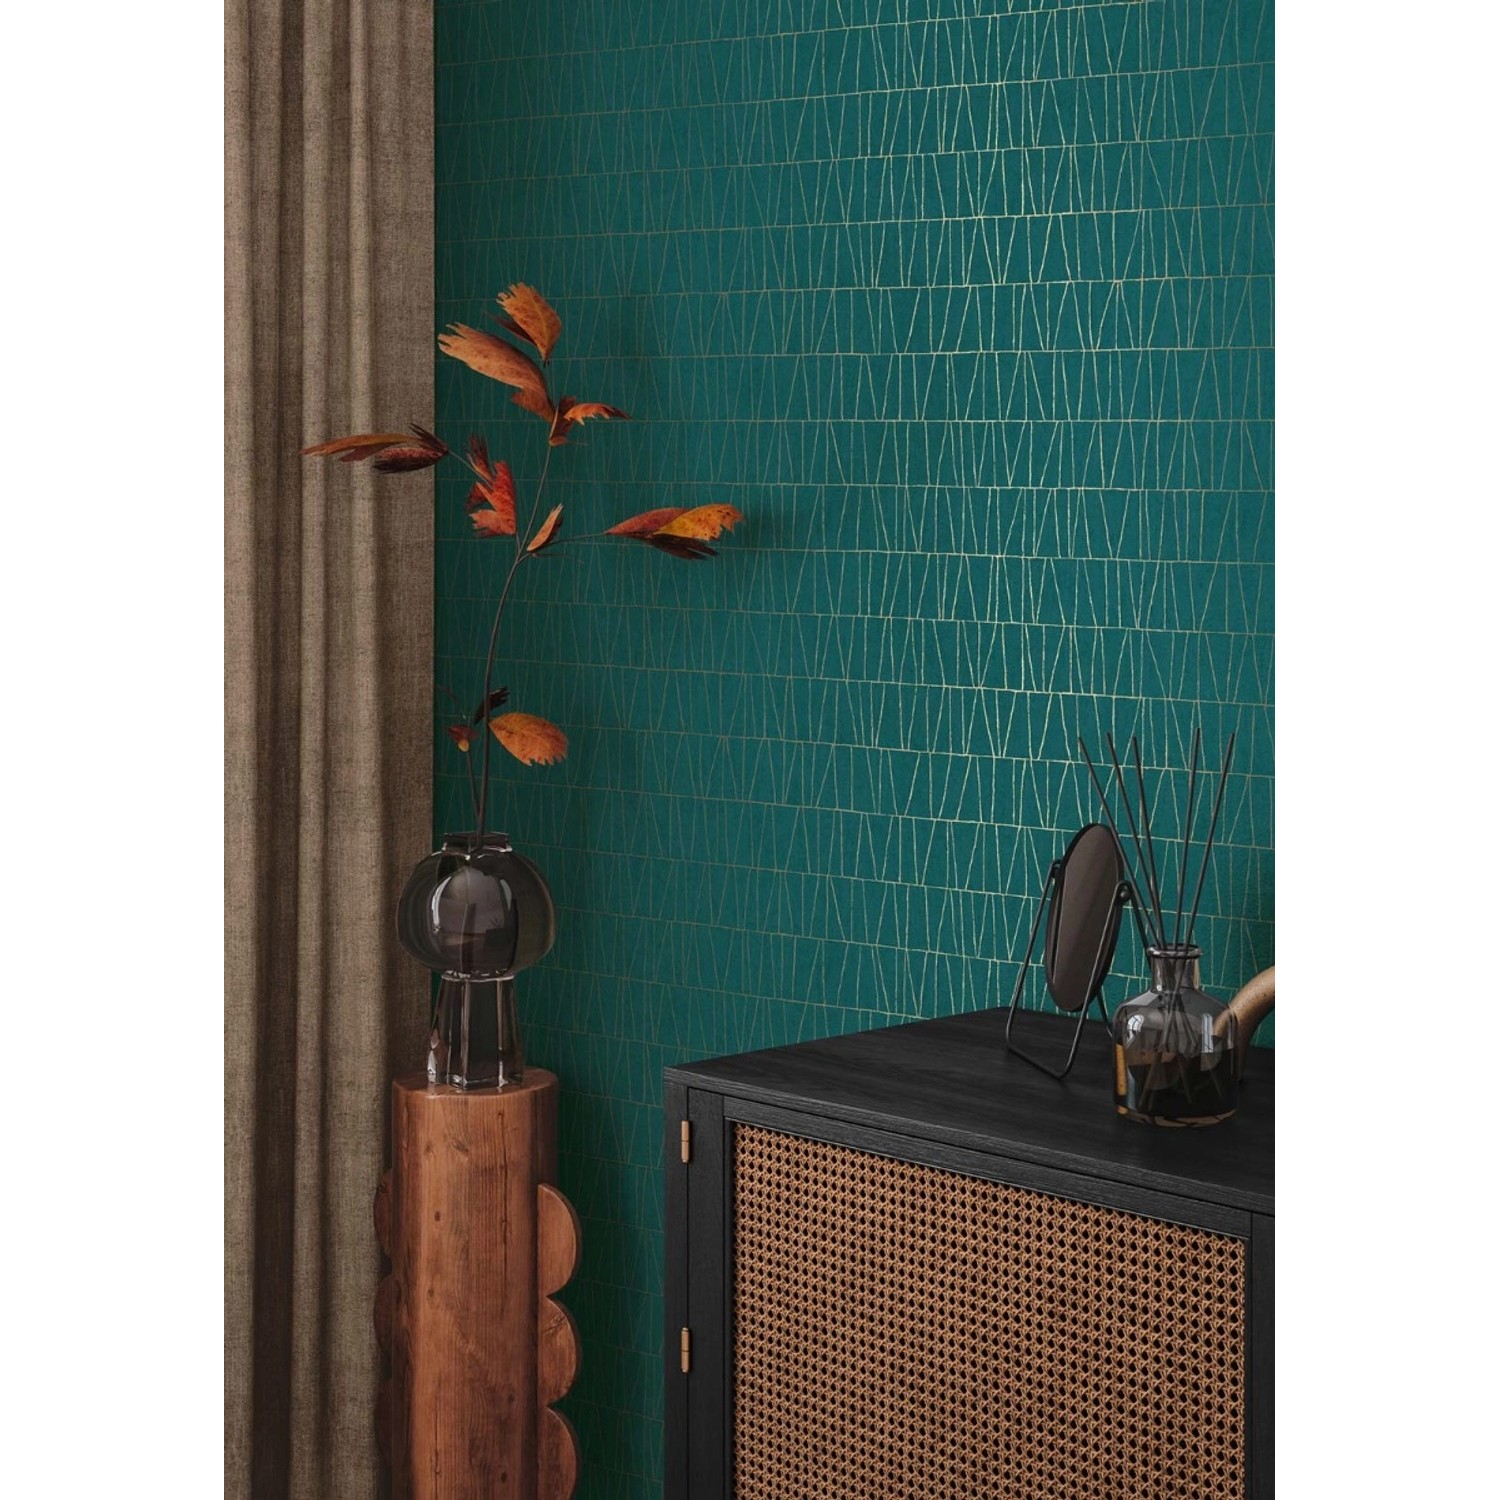 Bricoflor Tapete in Petrol Gold Grün Vliestapete Geometrische Muster im Art Déco Stil Vlies Mustertapete für Wohnzimmer und Küche von Bricoflor